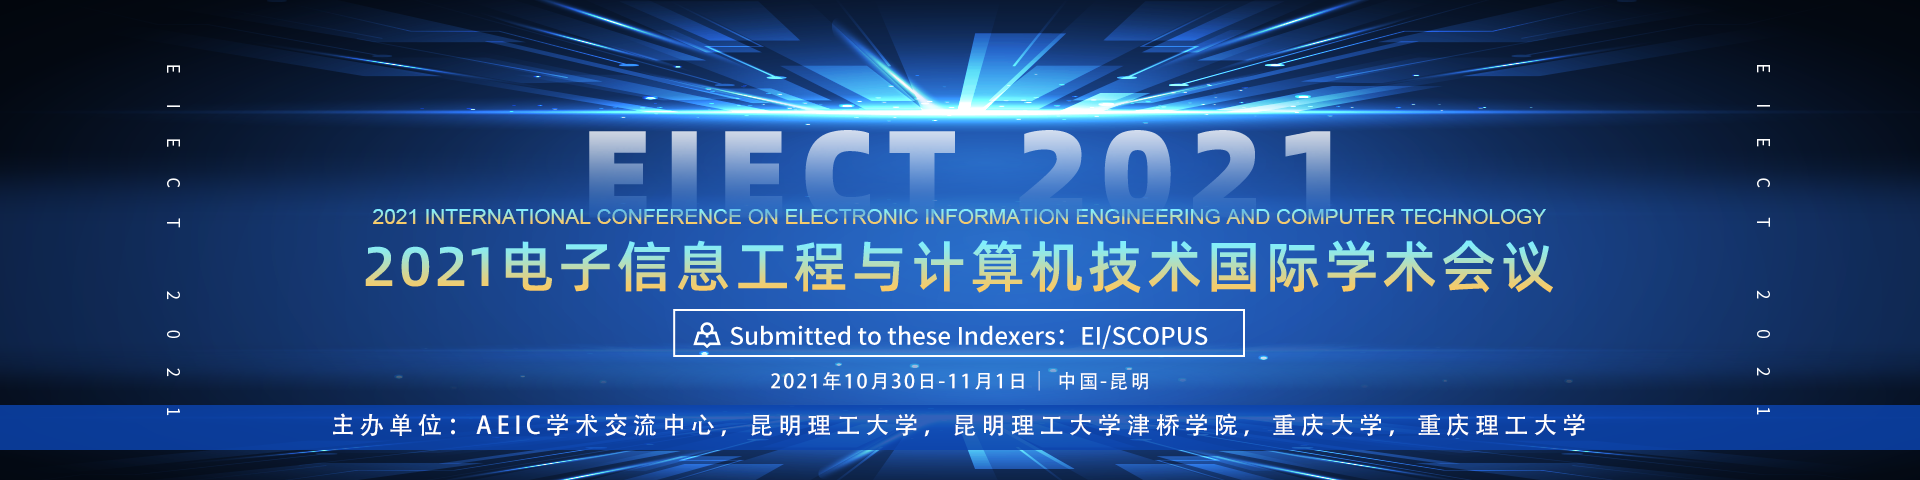 10月昆明-EIECT 2021-艾思-何霞丽-20210524 .png